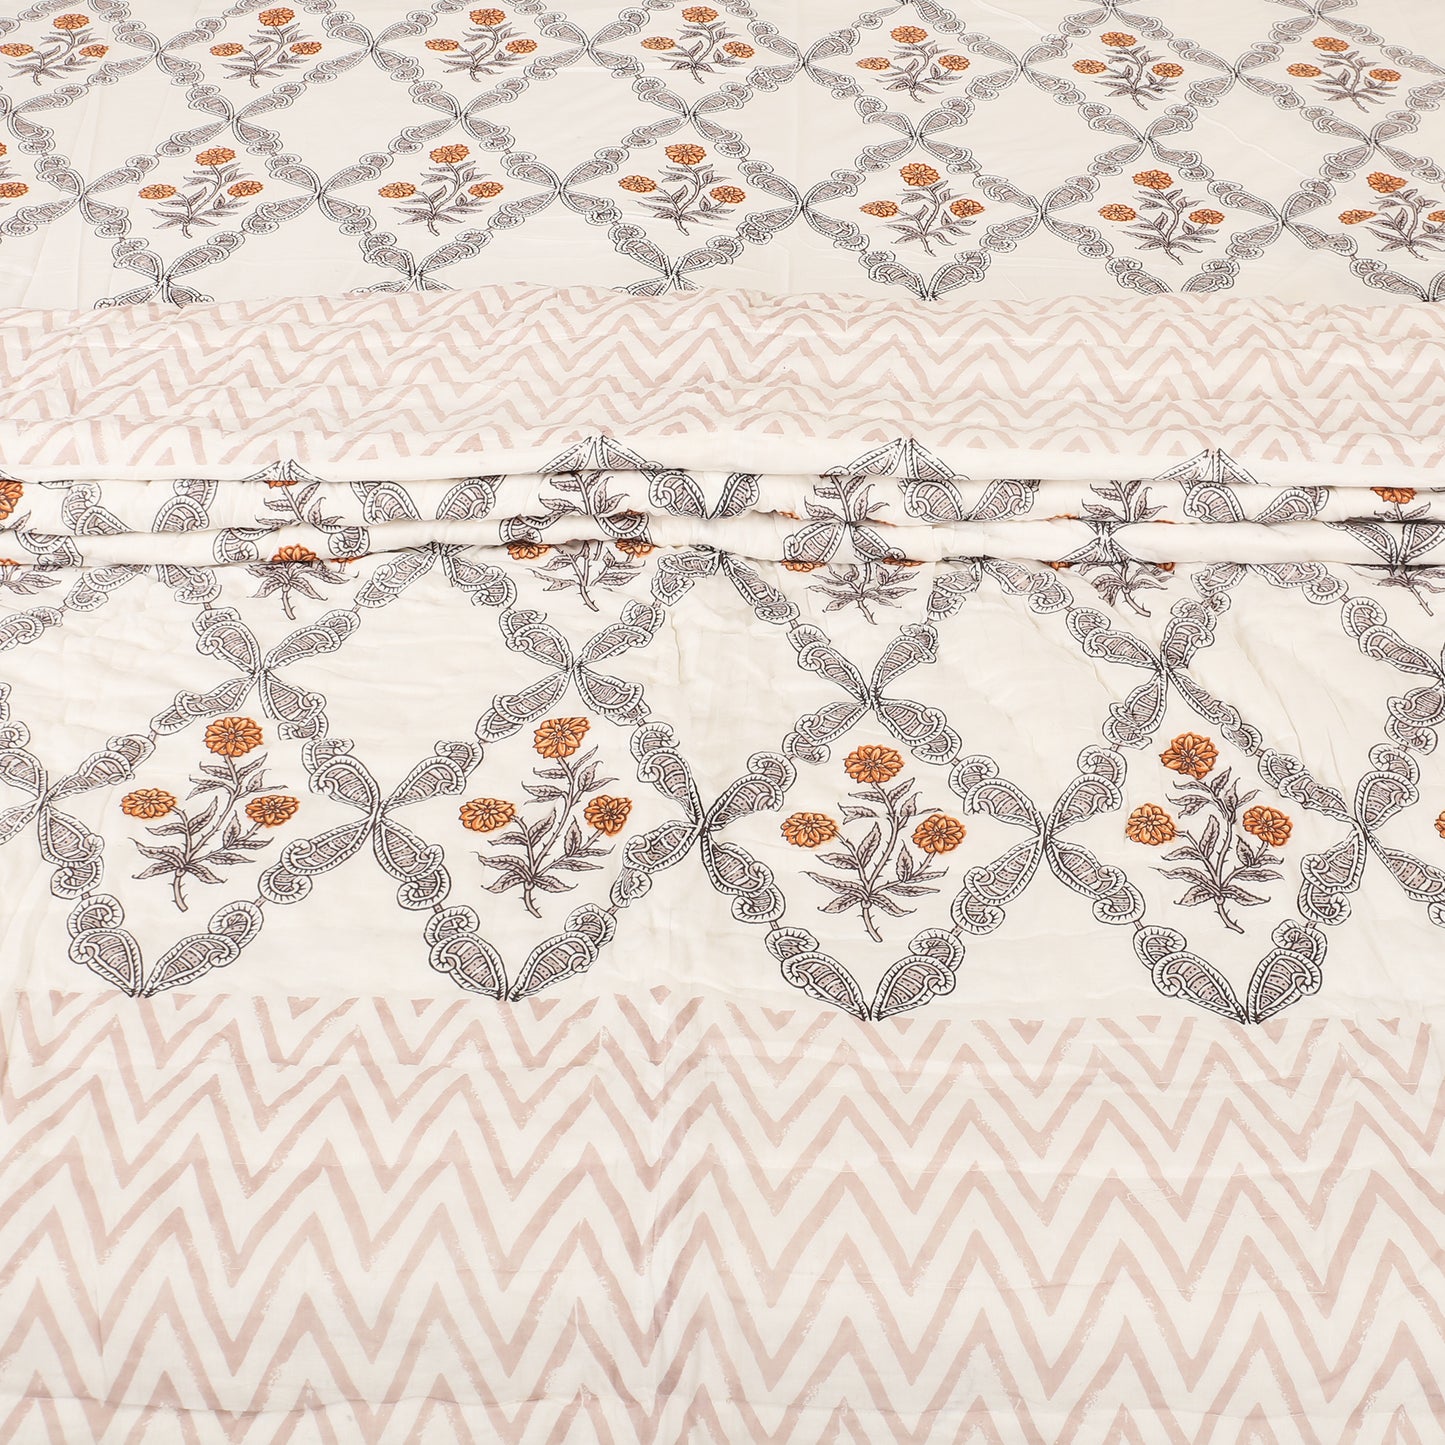 Block Print Bedding Set -Meraki Orange (Bedsheet set with Quilt) Gift Set